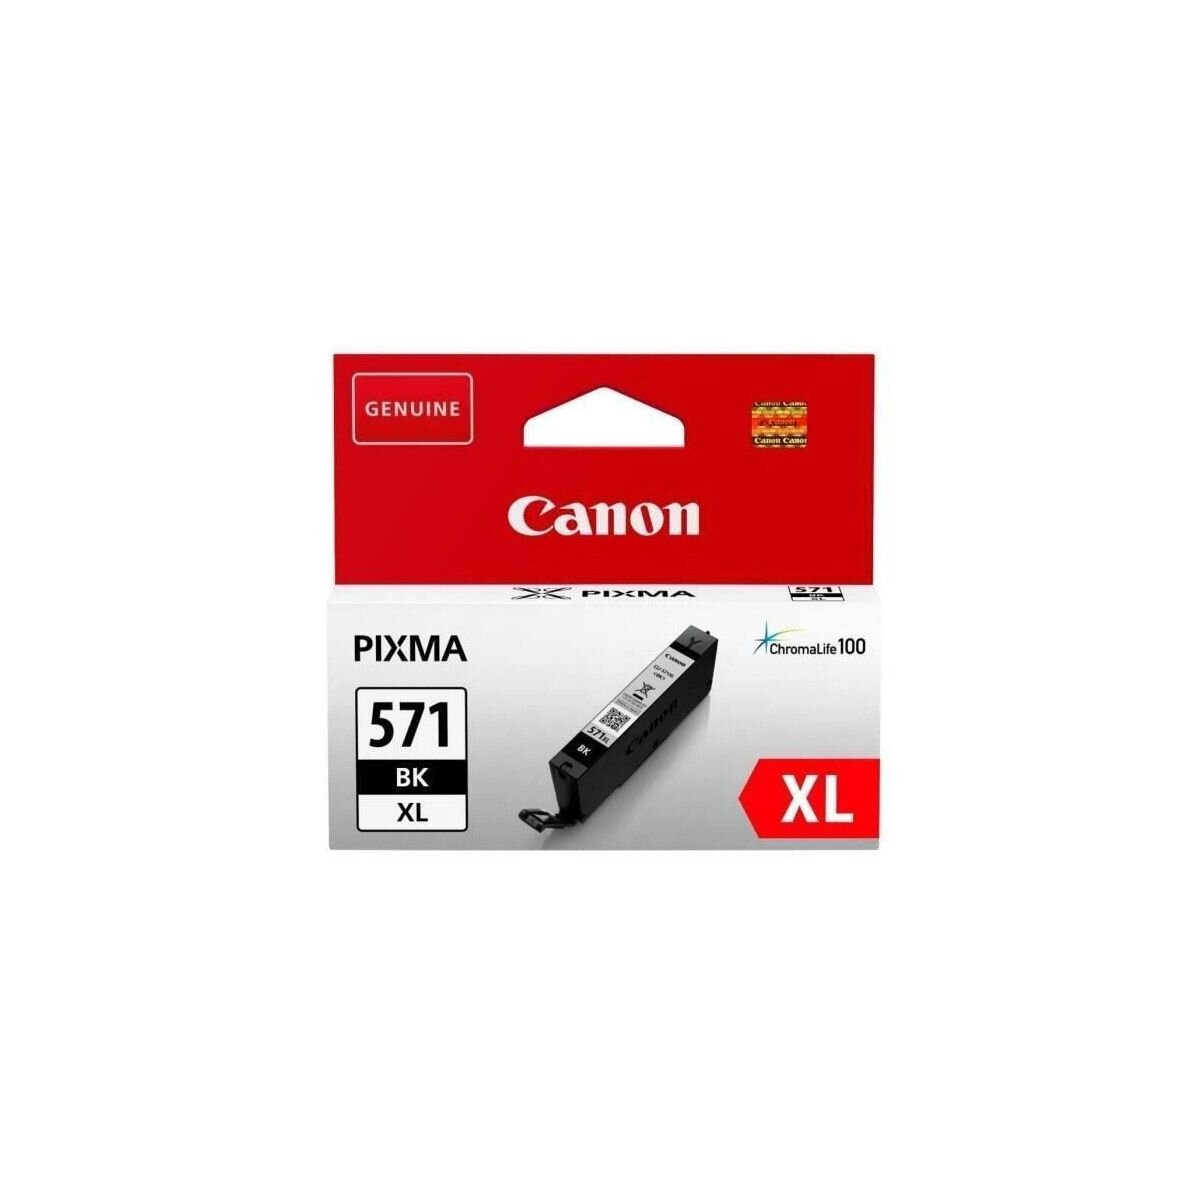 Canon imprimante multifonctionenpixma ts5050 noirejet dencrea4wifiecran 7  5cmlecteur cartes sd5 cartouch - La Poste